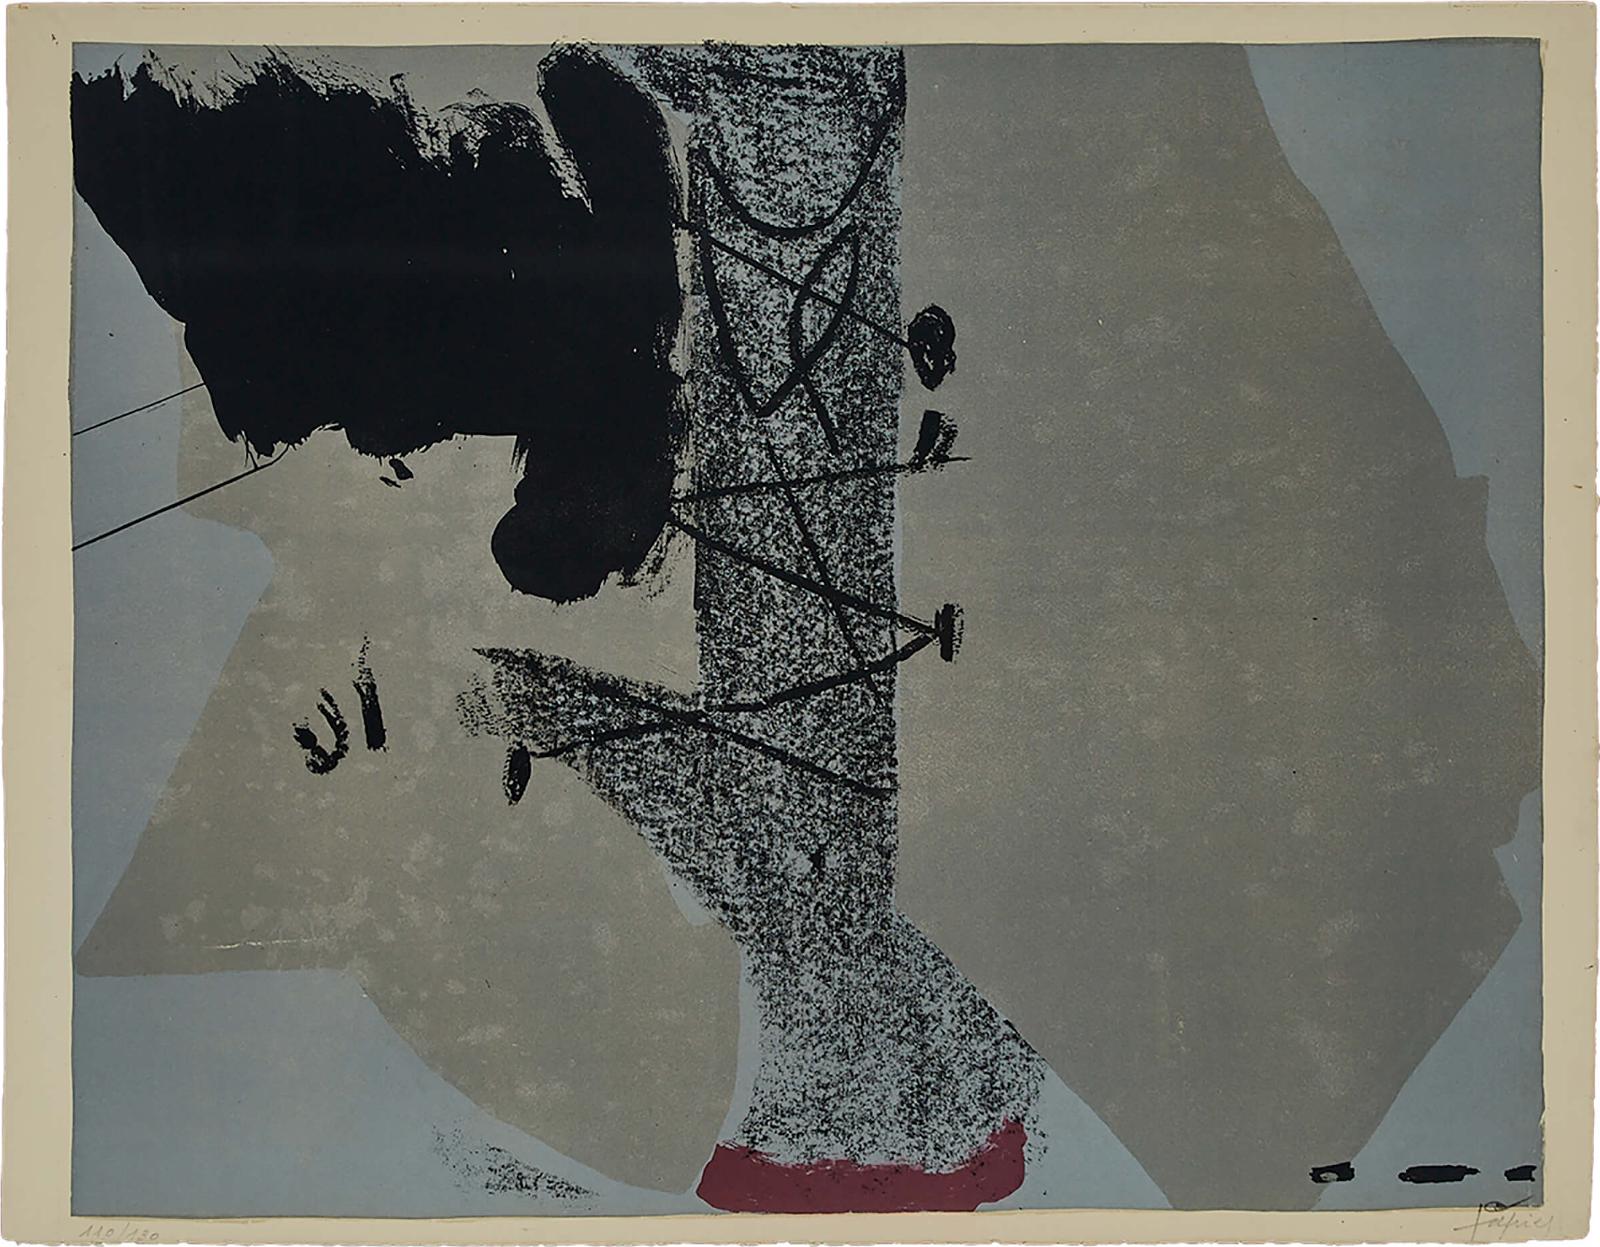 Antoni Tàpies (1923-2012) - Untitled (Saint Gall), 1962 [galfetti, 37]